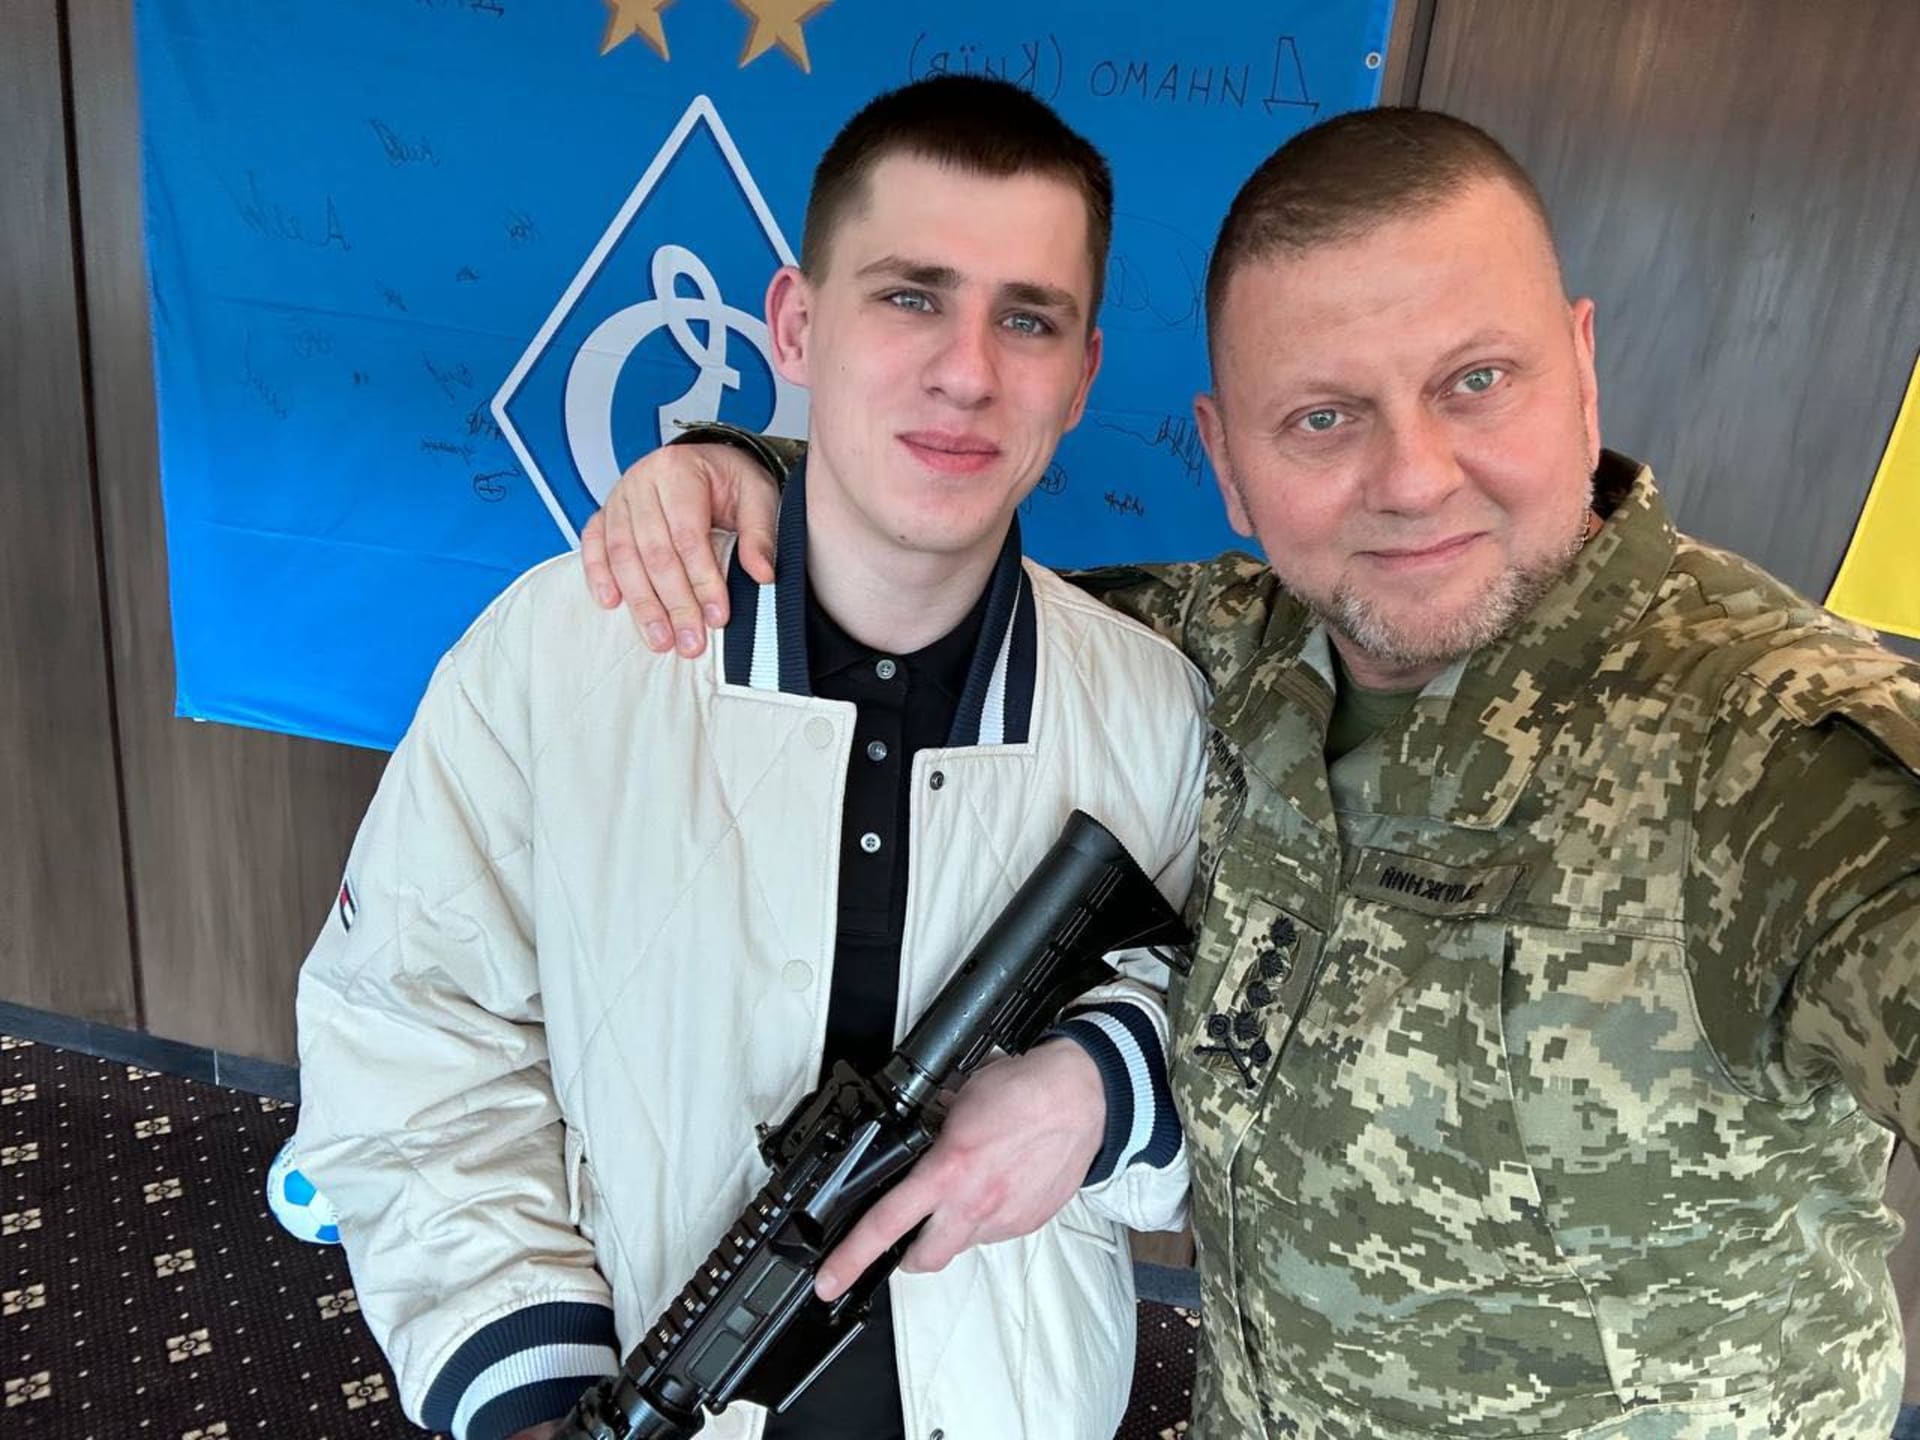 Ukrajinský voják Ruslan Zubarev, který pořídil autentické video ukazující záběry z těch nejdrsnějších zákopových bojů, obdržel vyznamenání Zlatý kříž.